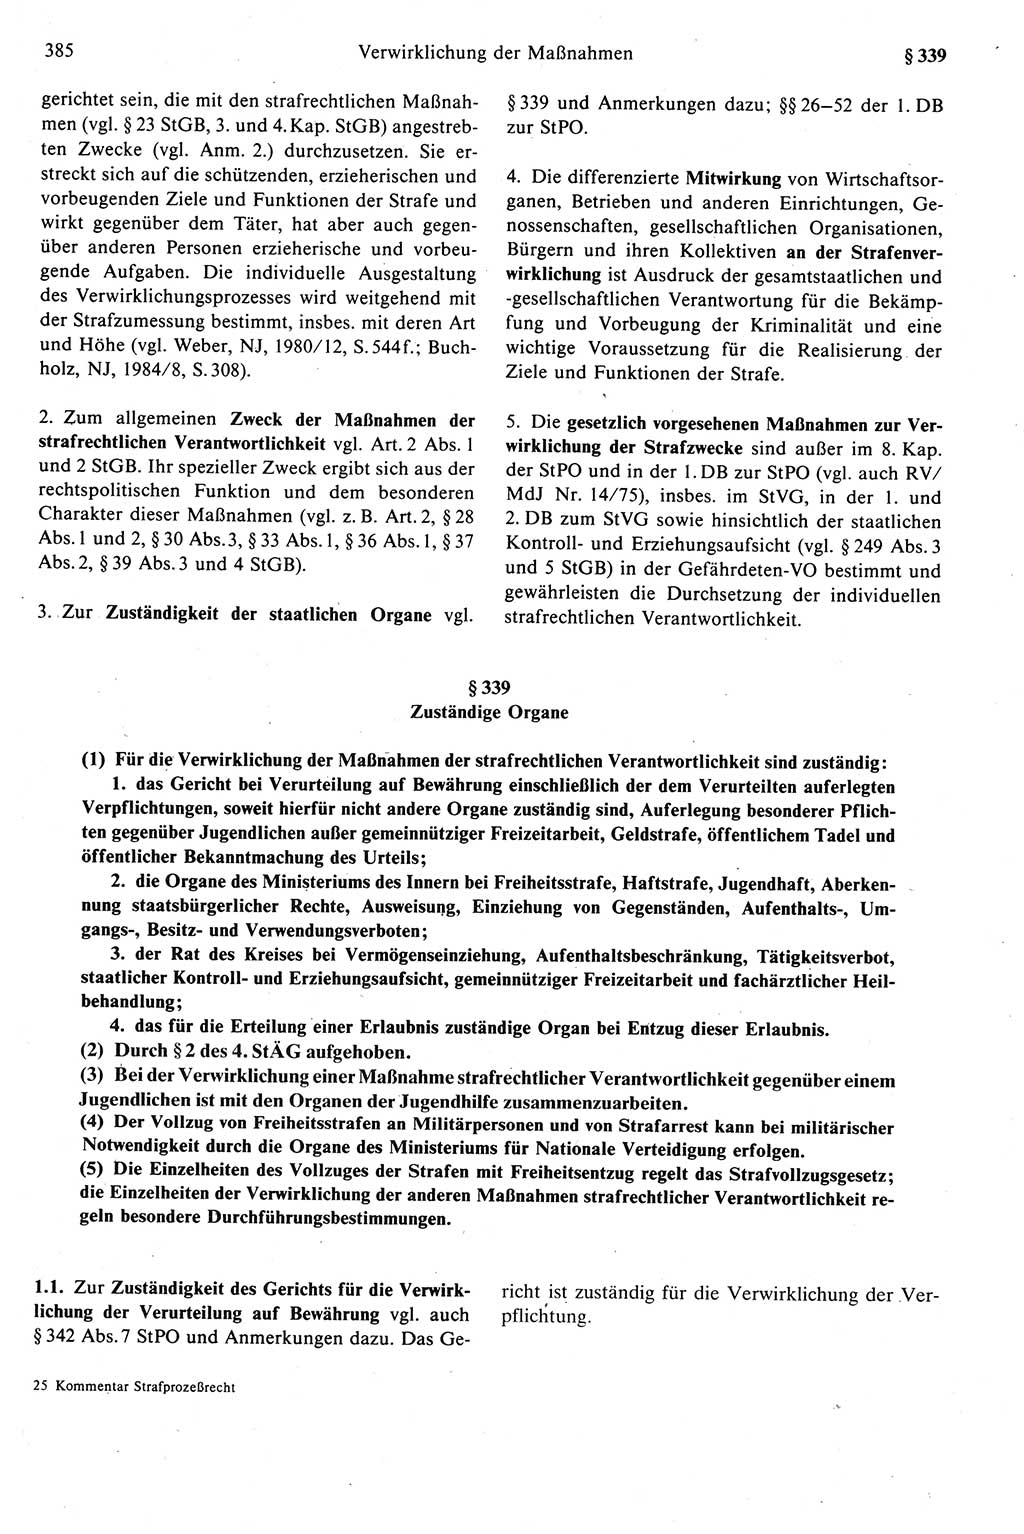 Strafprozeßrecht der DDR (Deutsche Demokratische Republik), Kommentar zur Strafprozeßordnung (StPO) 1989, Seite 385 (Strafprozeßr. DDR Komm. StPO 1989, S. 385)